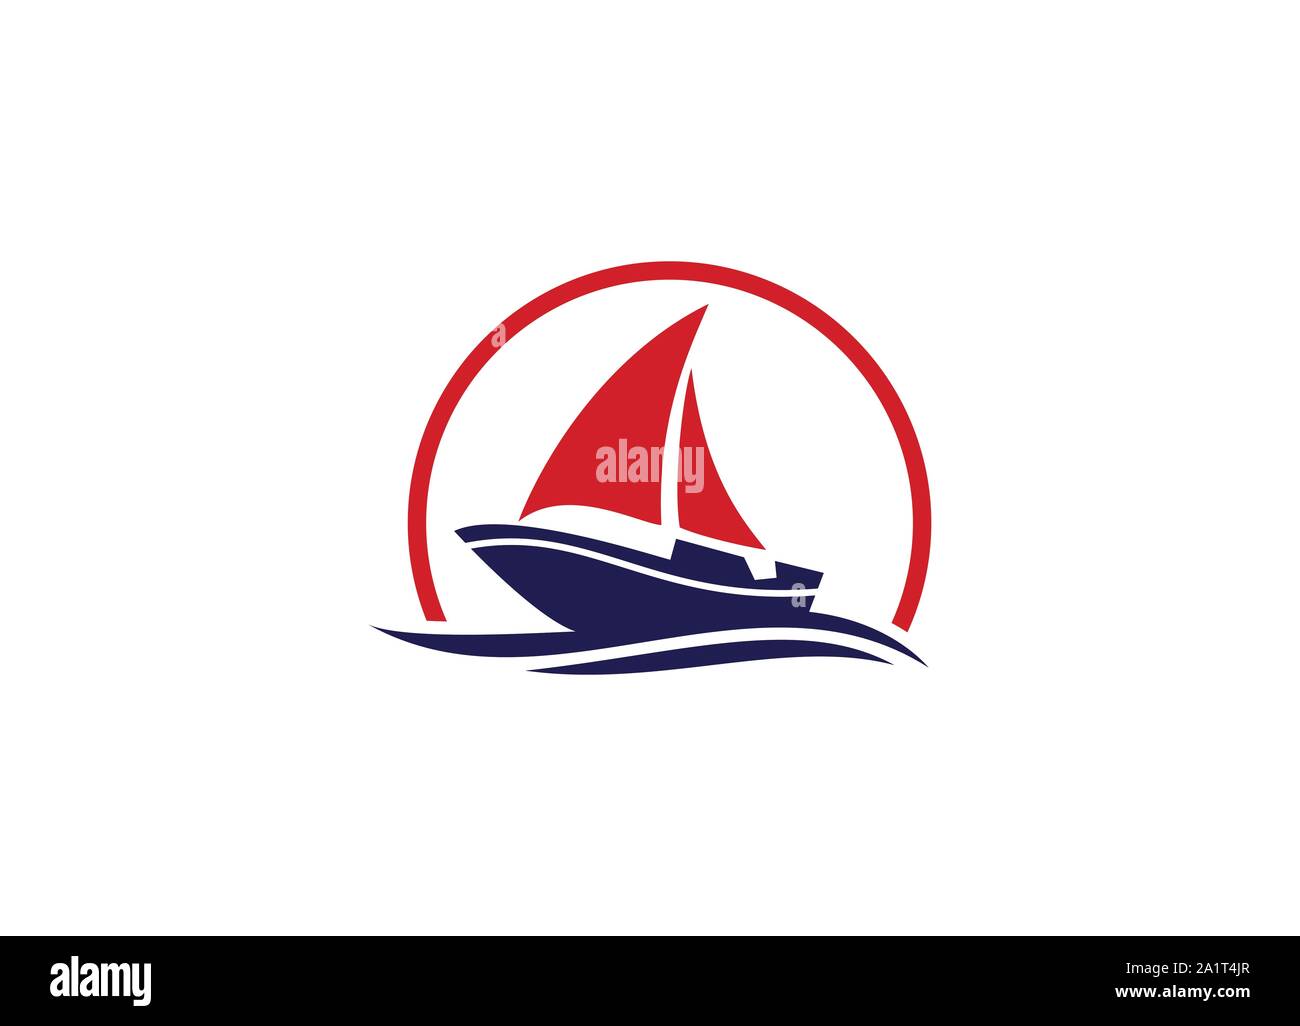 Kreuzfahrtschiff Logo Vorlage Vektor icon Abbildung: Logo Design, Schiff, nautische Segelboot Symbol vektor design, Segelboot Symbol, Stock Vektor